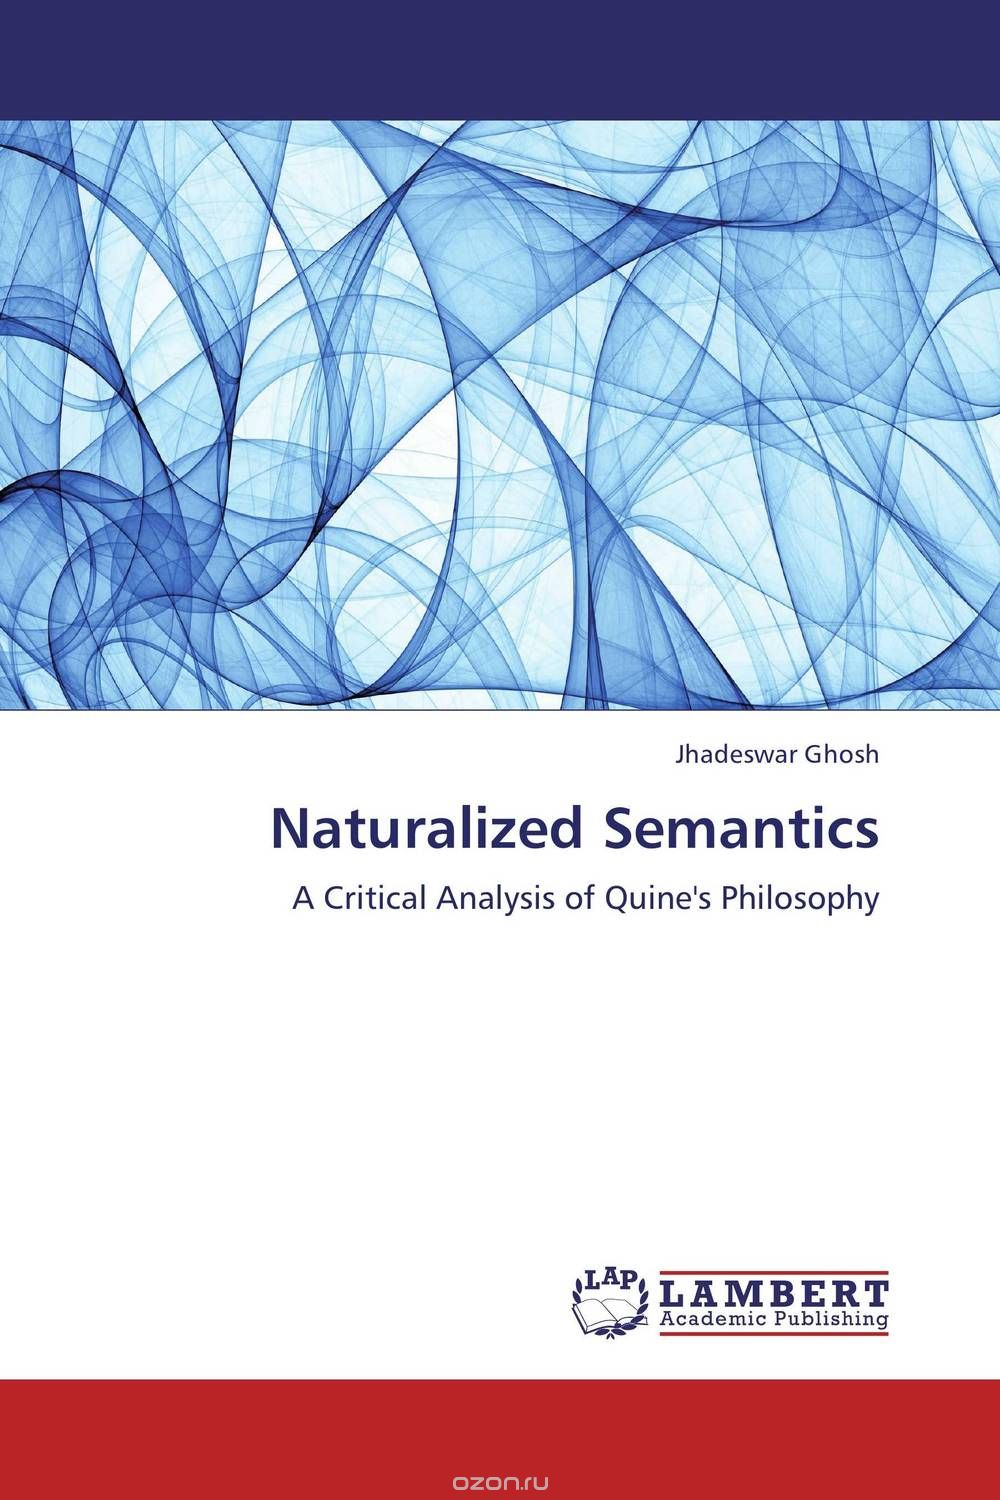 Скачать книгу "Naturalized Semantics"